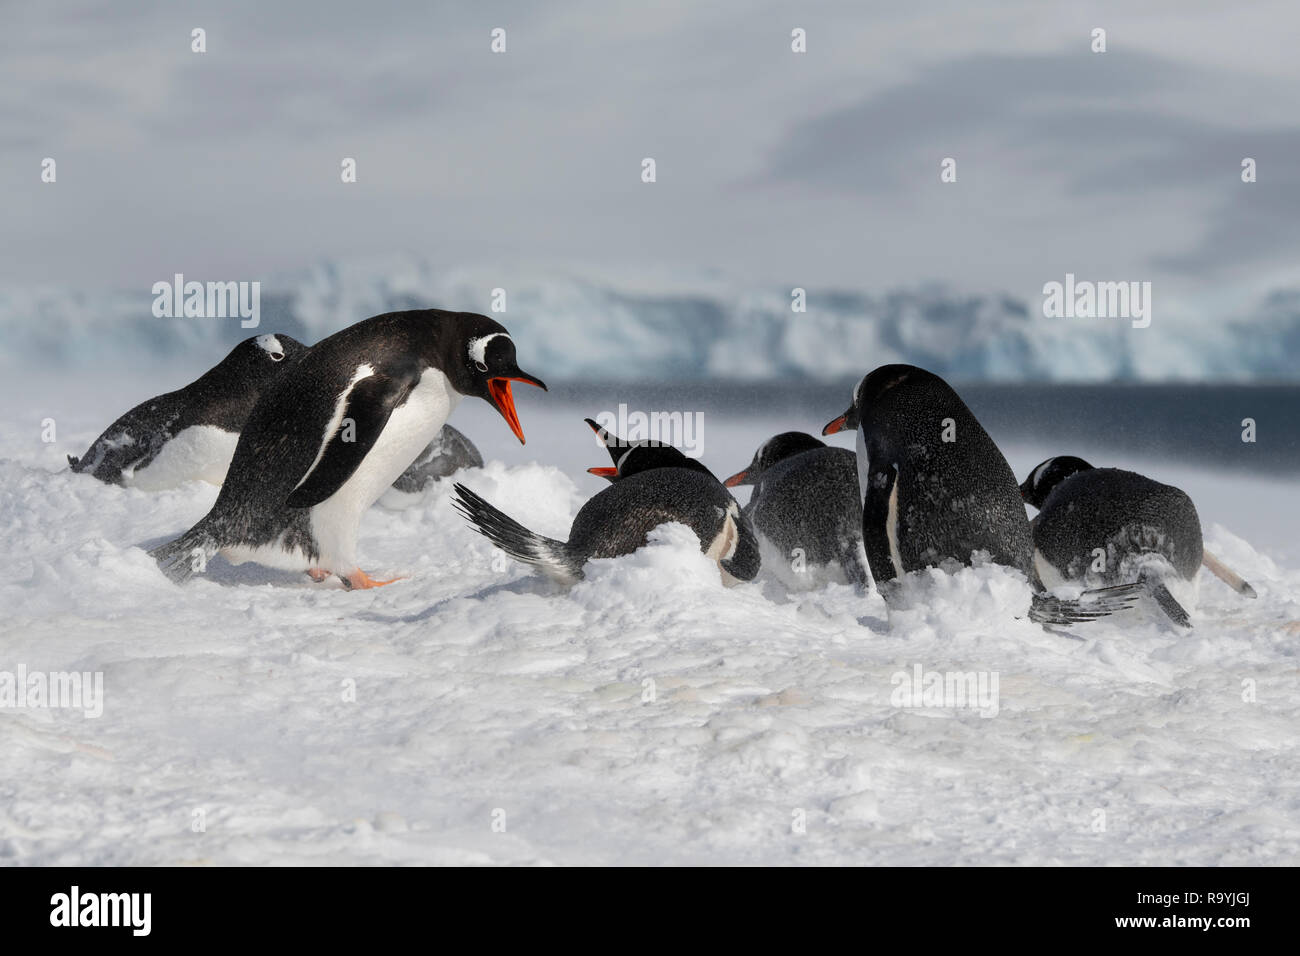 Antarktis, gerlache Strait, Palmer Archipel, Wiencke Island, Damoy Punkt. Nesting Gentoo Penguins im Schneegestöber. Stockfoto